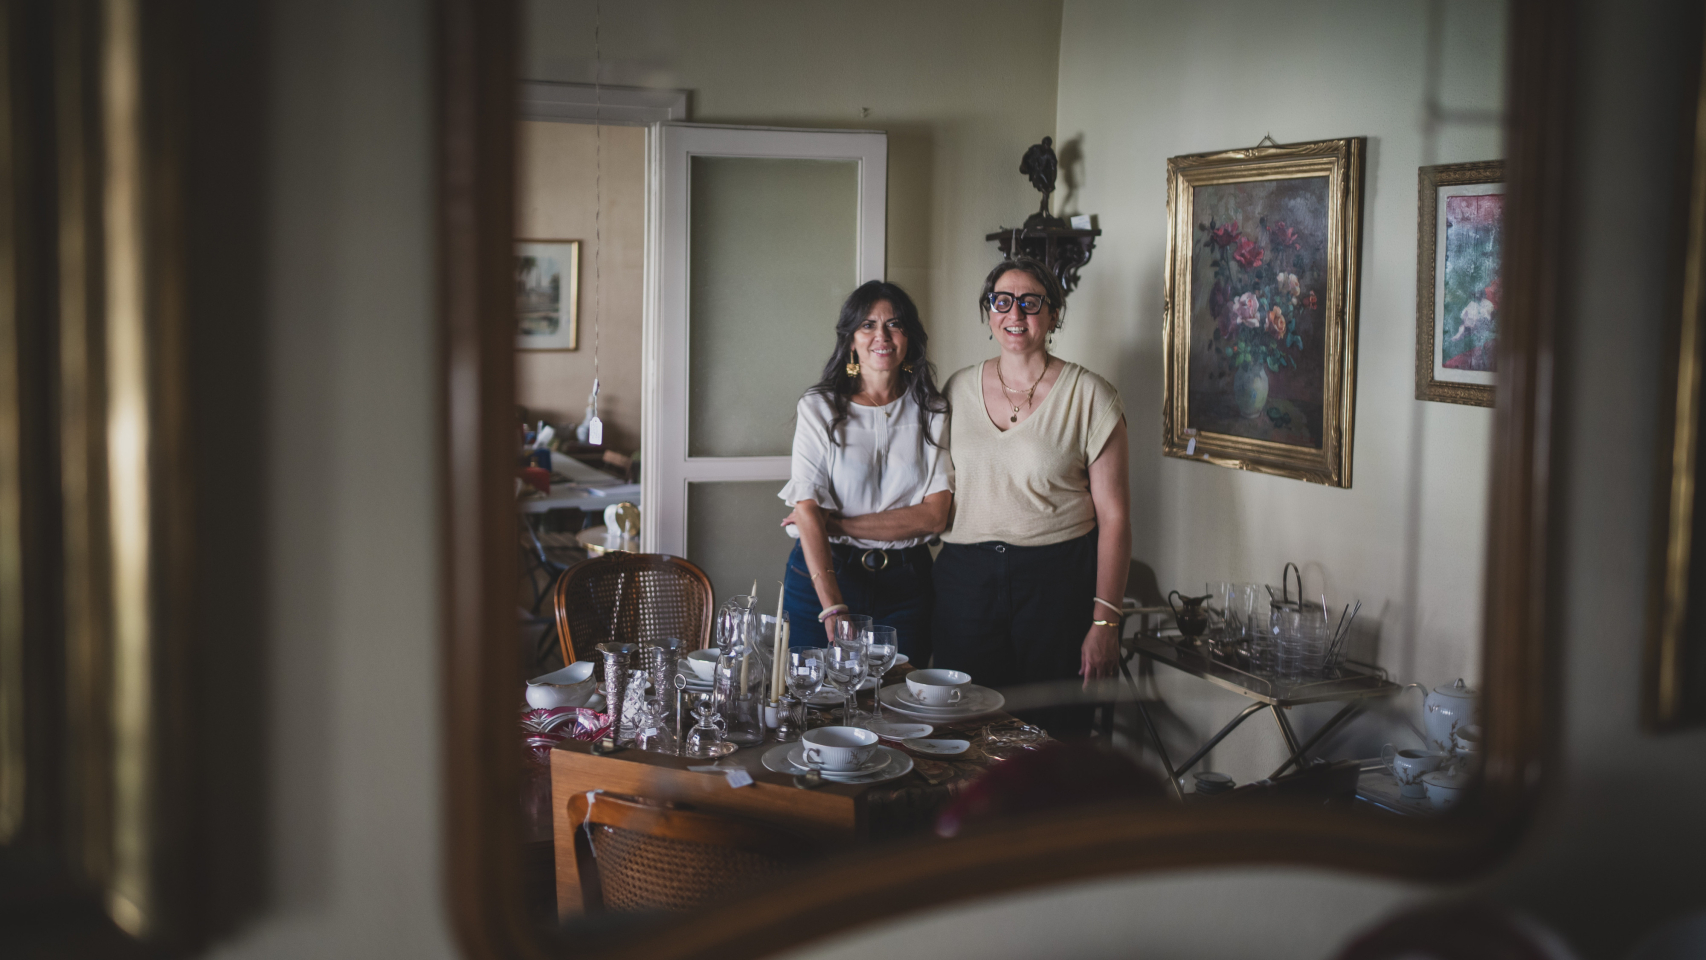 Astrid y María, las mujeres que organizan puertas abiertas en las viviendas de fallecidos o gente que se muda para volver a darles vida a sus recuerdos.